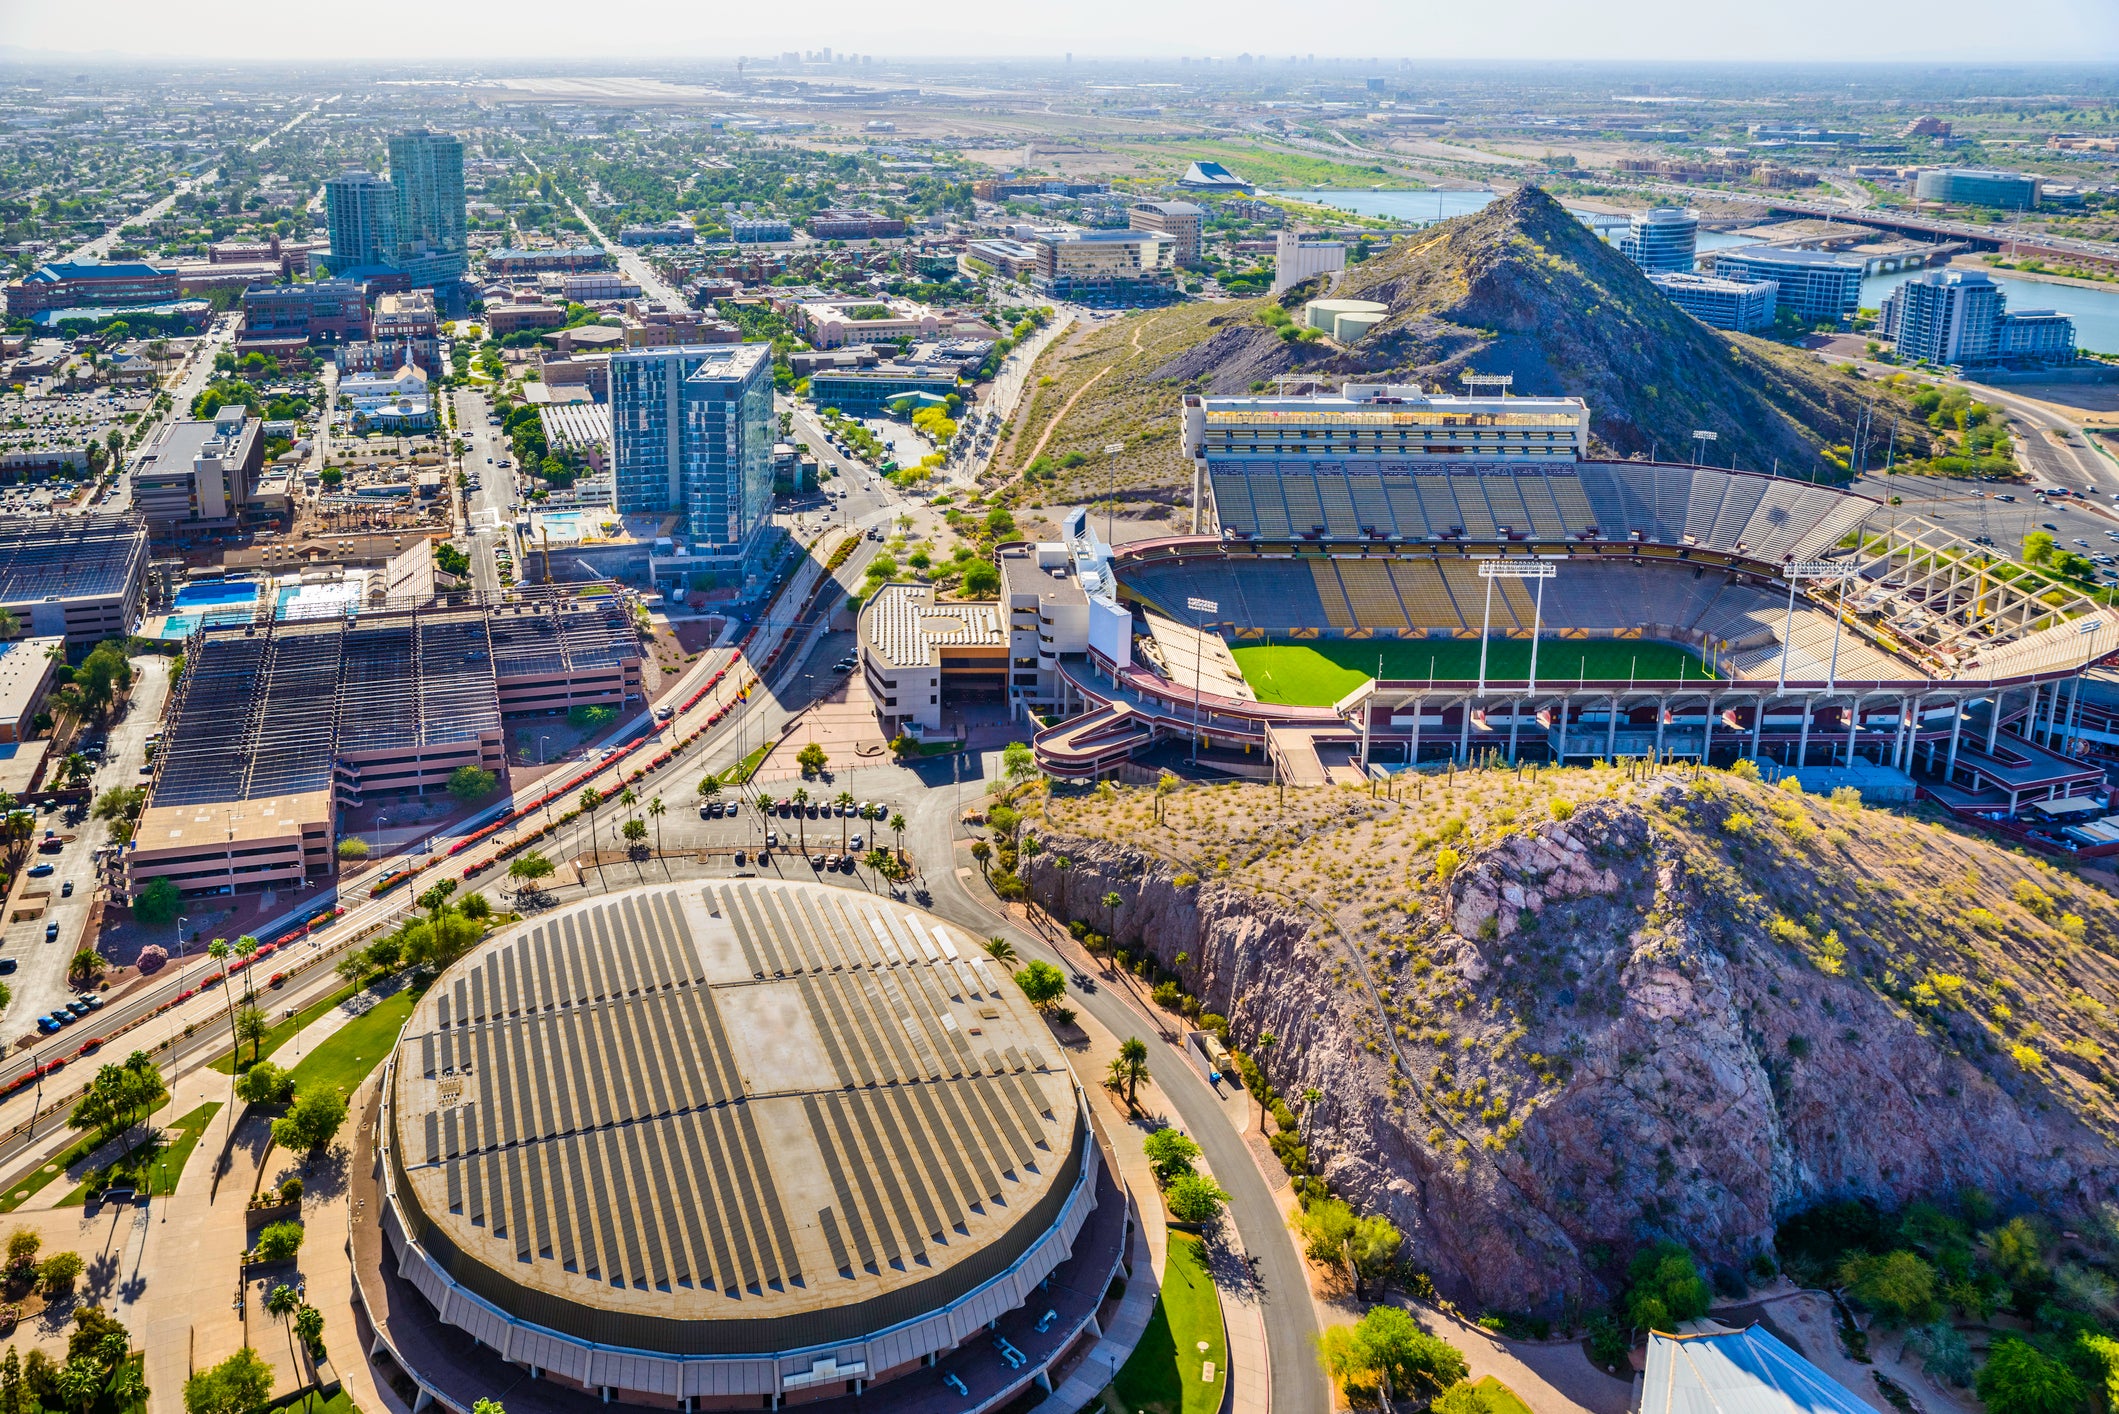 Vista panorámica aérea desde un helicóptero de Tempe, Arizona, que muestra el campus de la Universidad Estatal de Arizona con el estadio de futbol americano Sun Devil (Frank Kush Field) al centro a la derecha